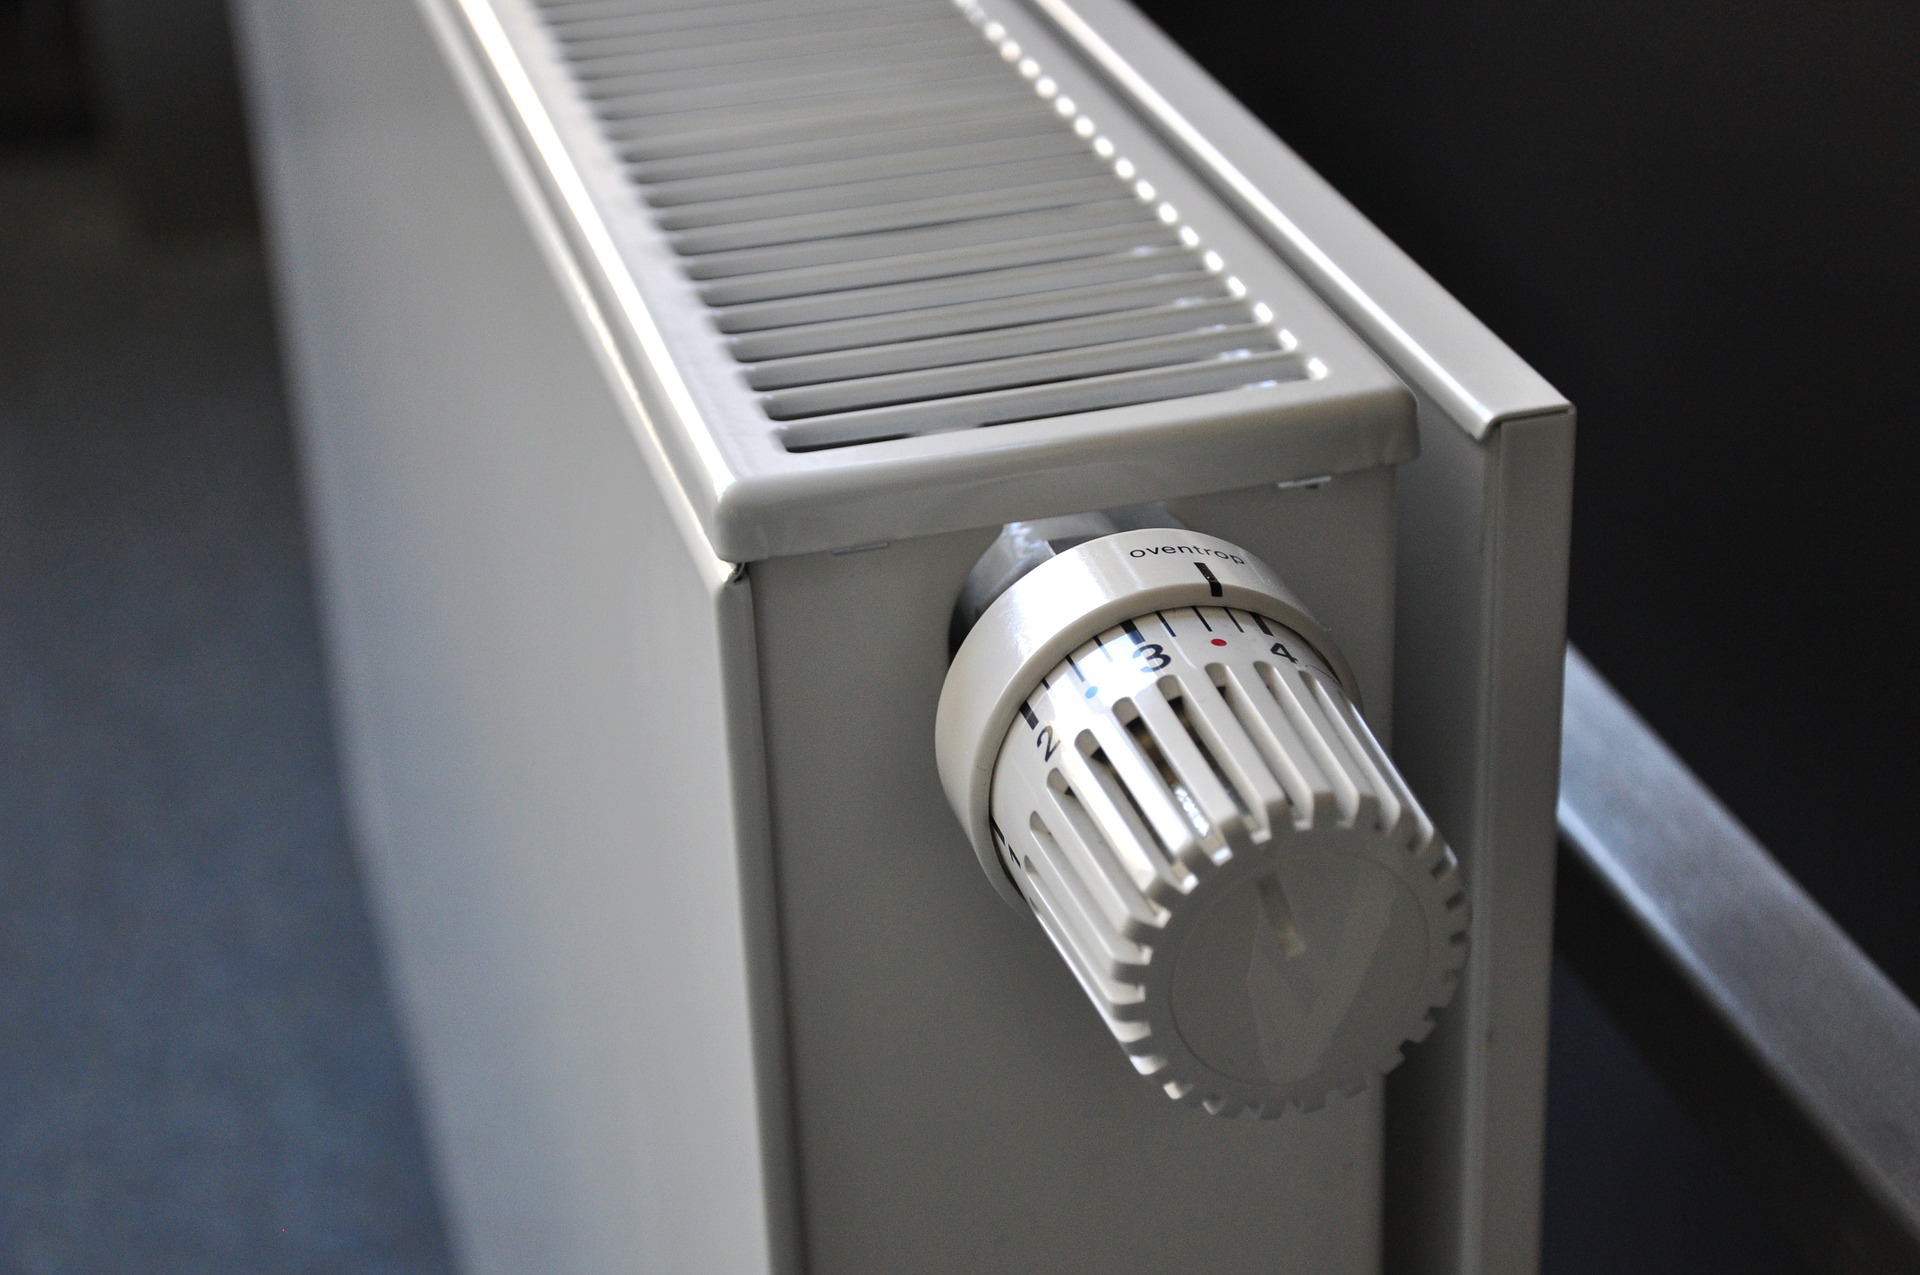 Valvole termostatiche per termosifoni, cosa sono e a cosa servono?